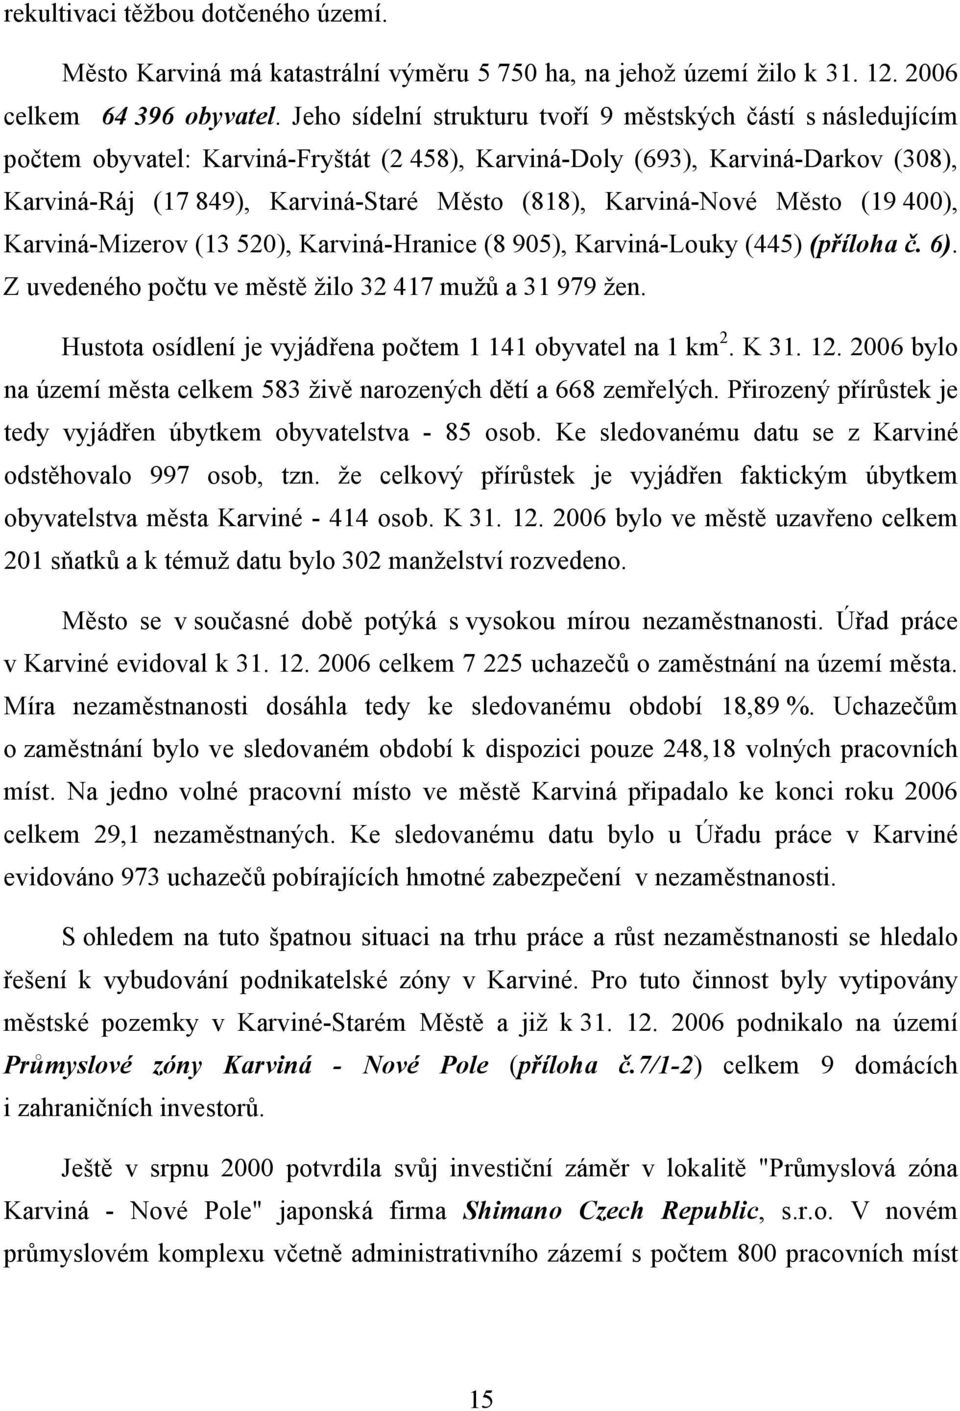 Karviná-Nové Město (19 400), Karviná-Mizerov (13 520), Karviná-Hranice (8 905), Karviná-Louky (445) (příloha č. 6). Z uvedeného počtu ve městě žilo 32 417 mužů a 31 979 žen.